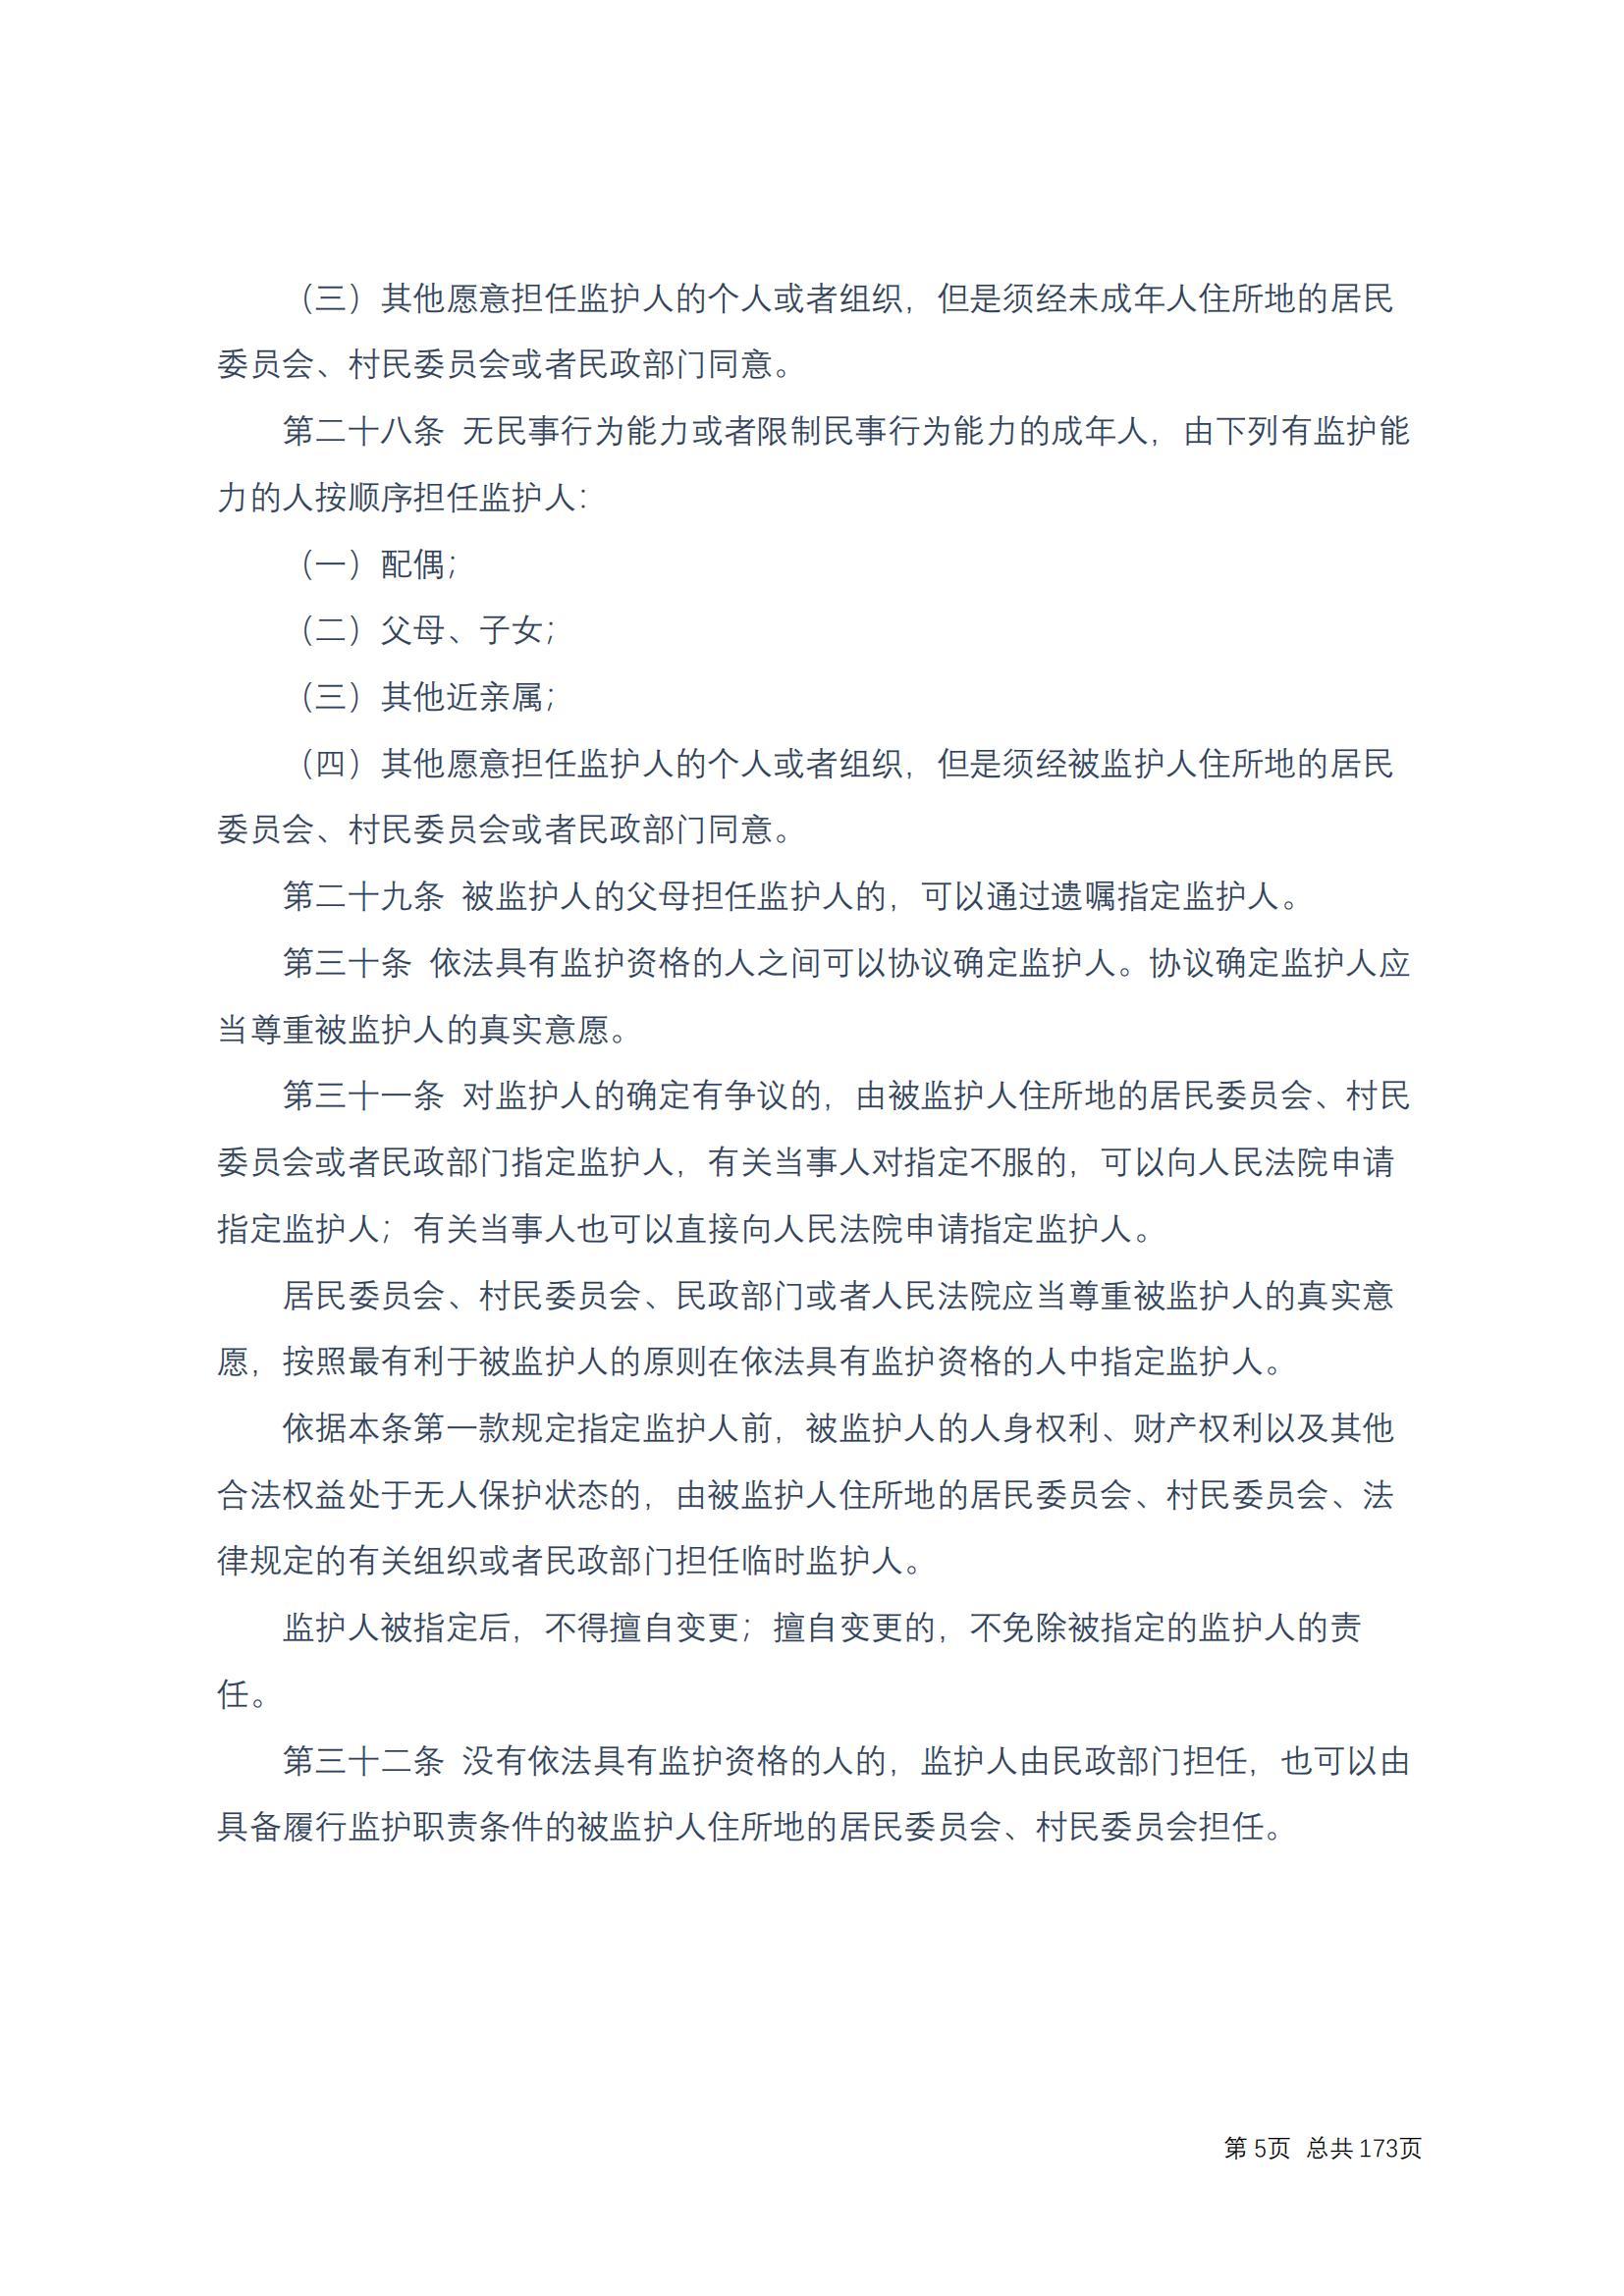 中华人民共和国民法典 修改过_04